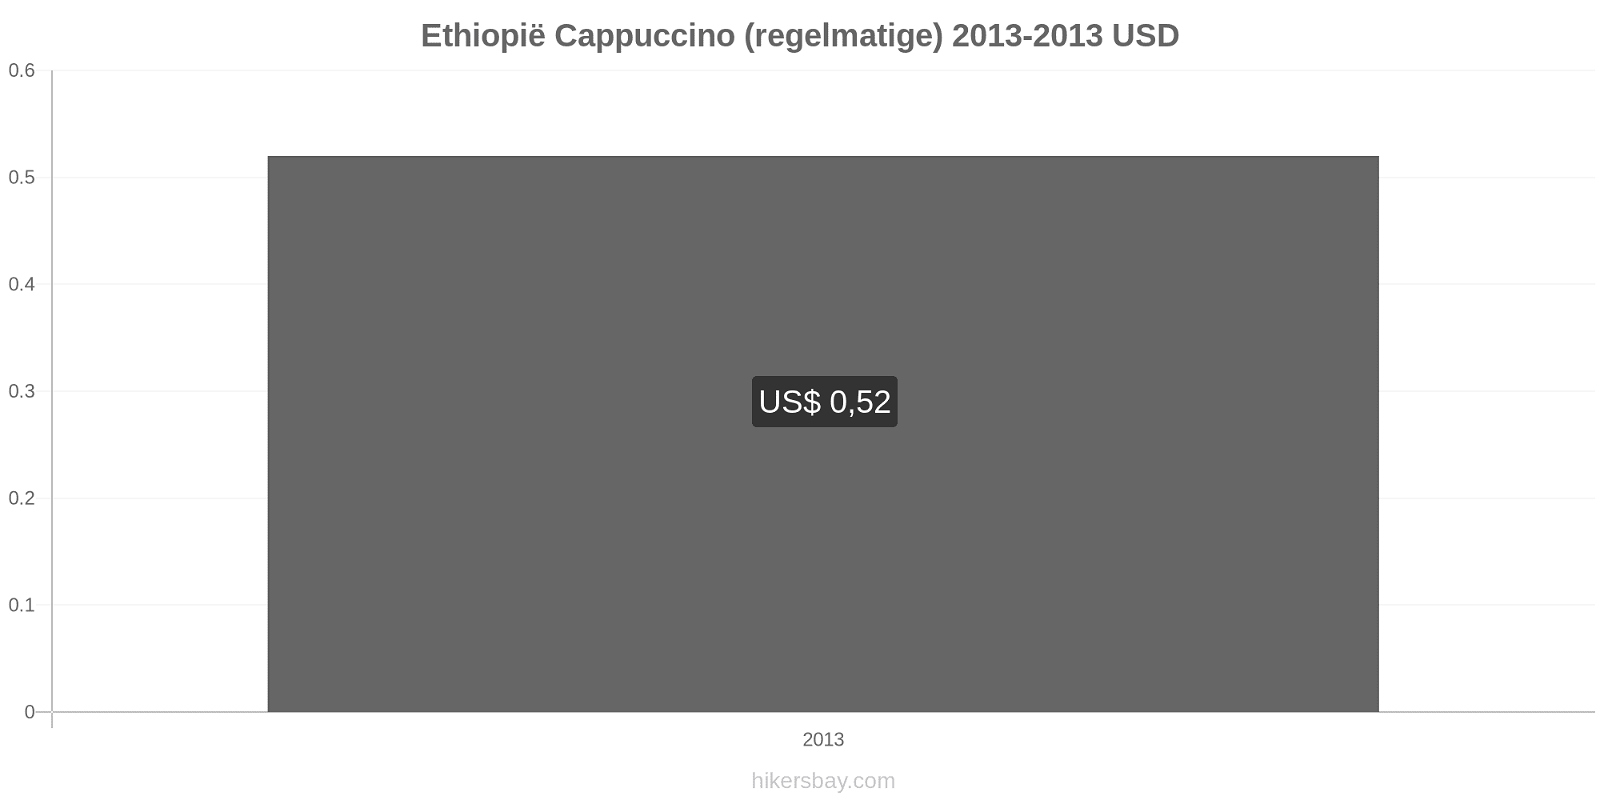 Ethiopië prijswijzigingen Cappuccino hikersbay.com